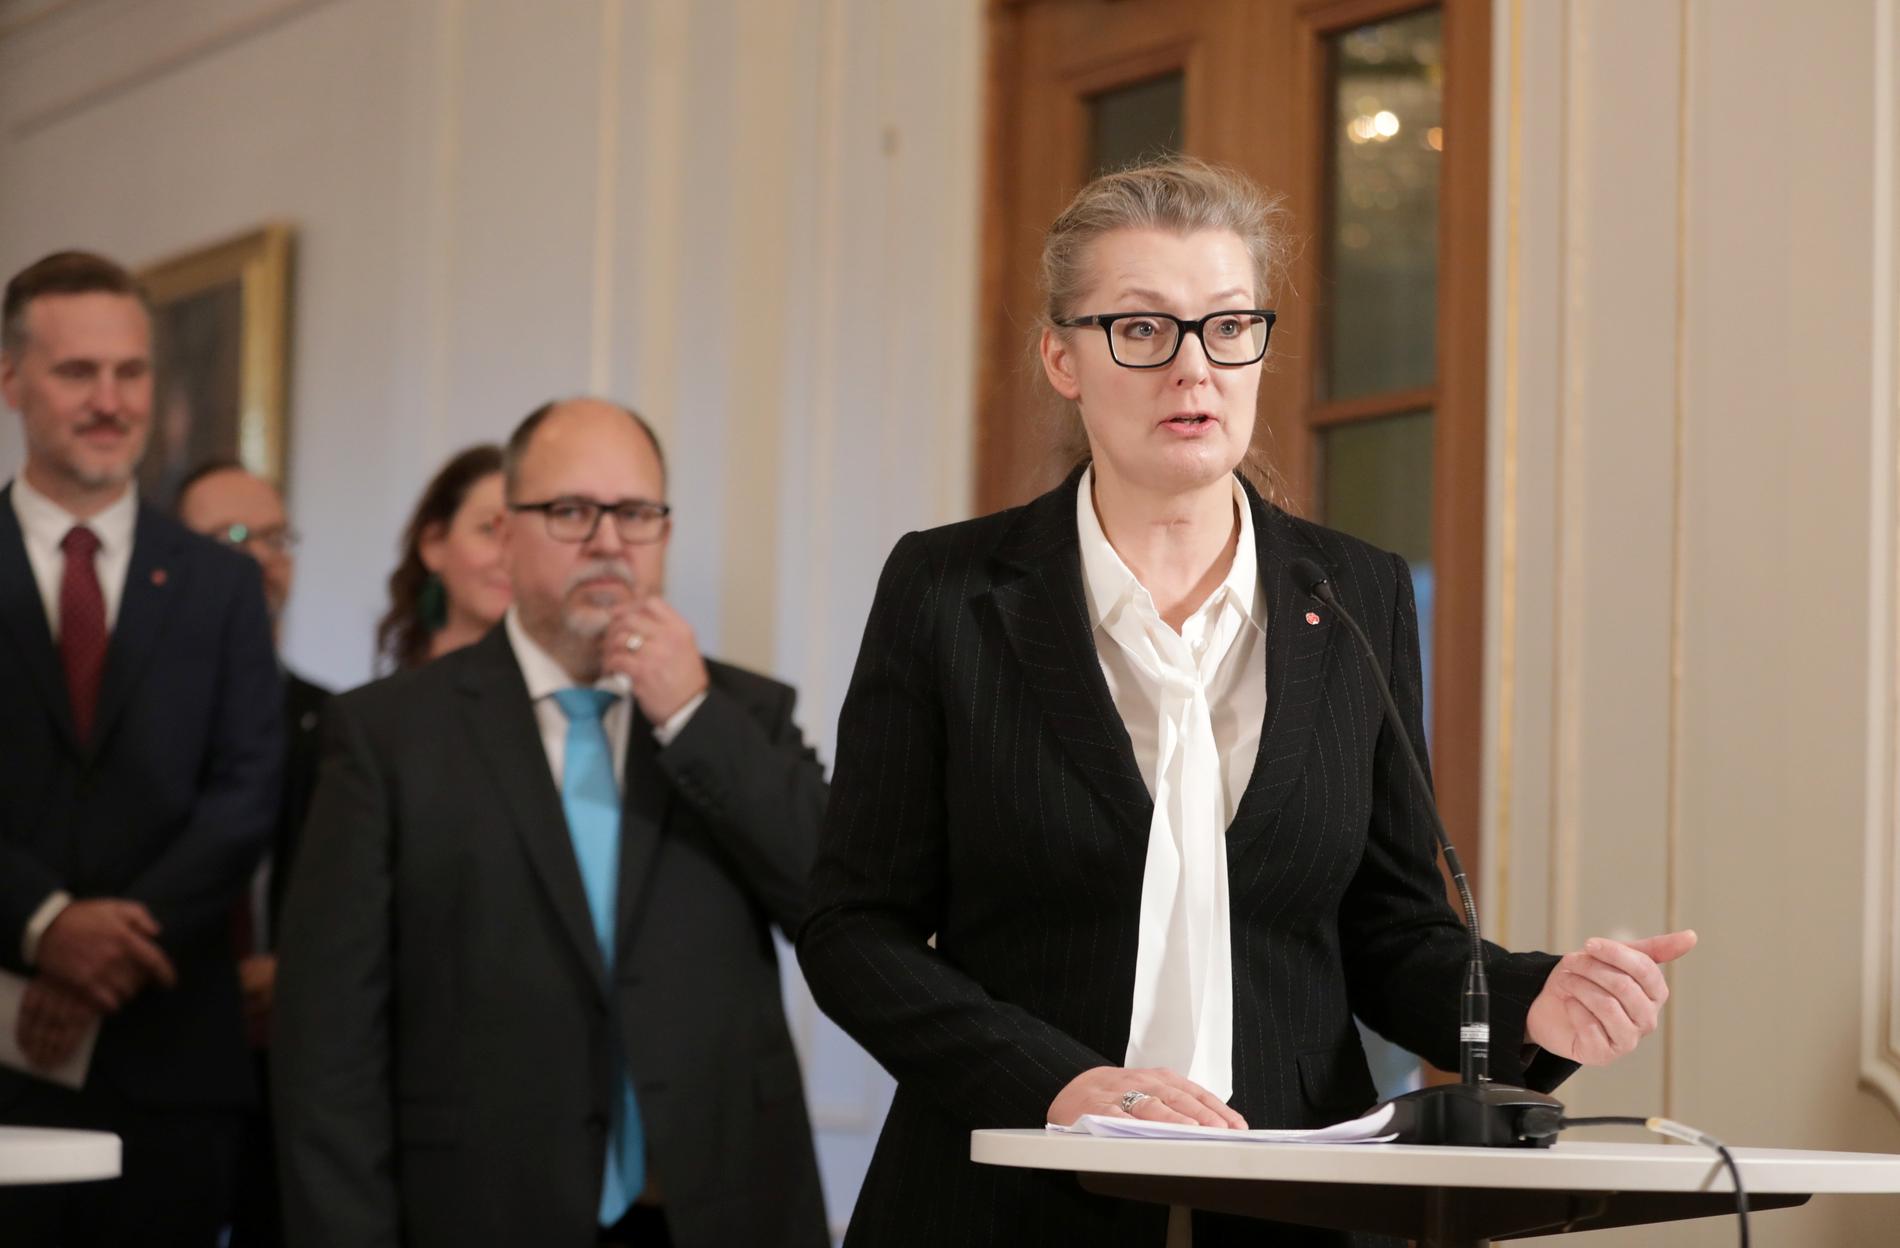 Lina Axelsson Kihlblom (S) är ny skolminister. Hon tar ställning emot vinster i välfärden: "Skattepengarna ska gå till eleverna och inget annat".